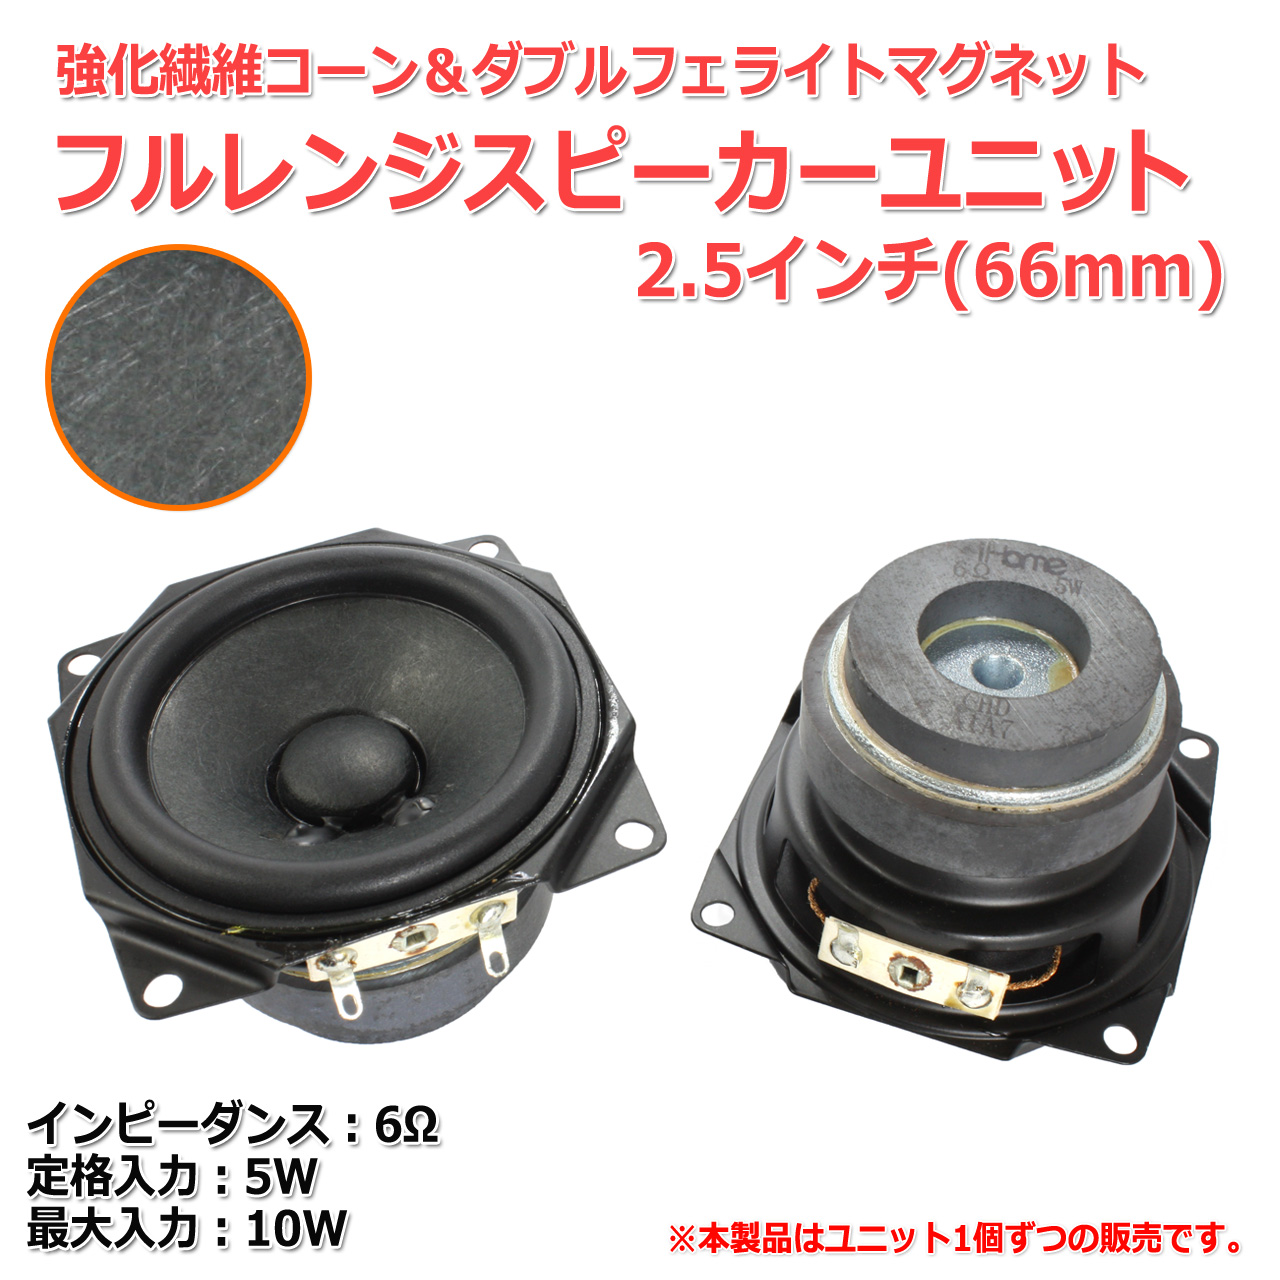 [ light ] strengthen fiber corn & double fe light magnet full range speaker unit 2.5 -inch (66mm) 6Ω/MAX10W[ speaker original work /DIY audio ]